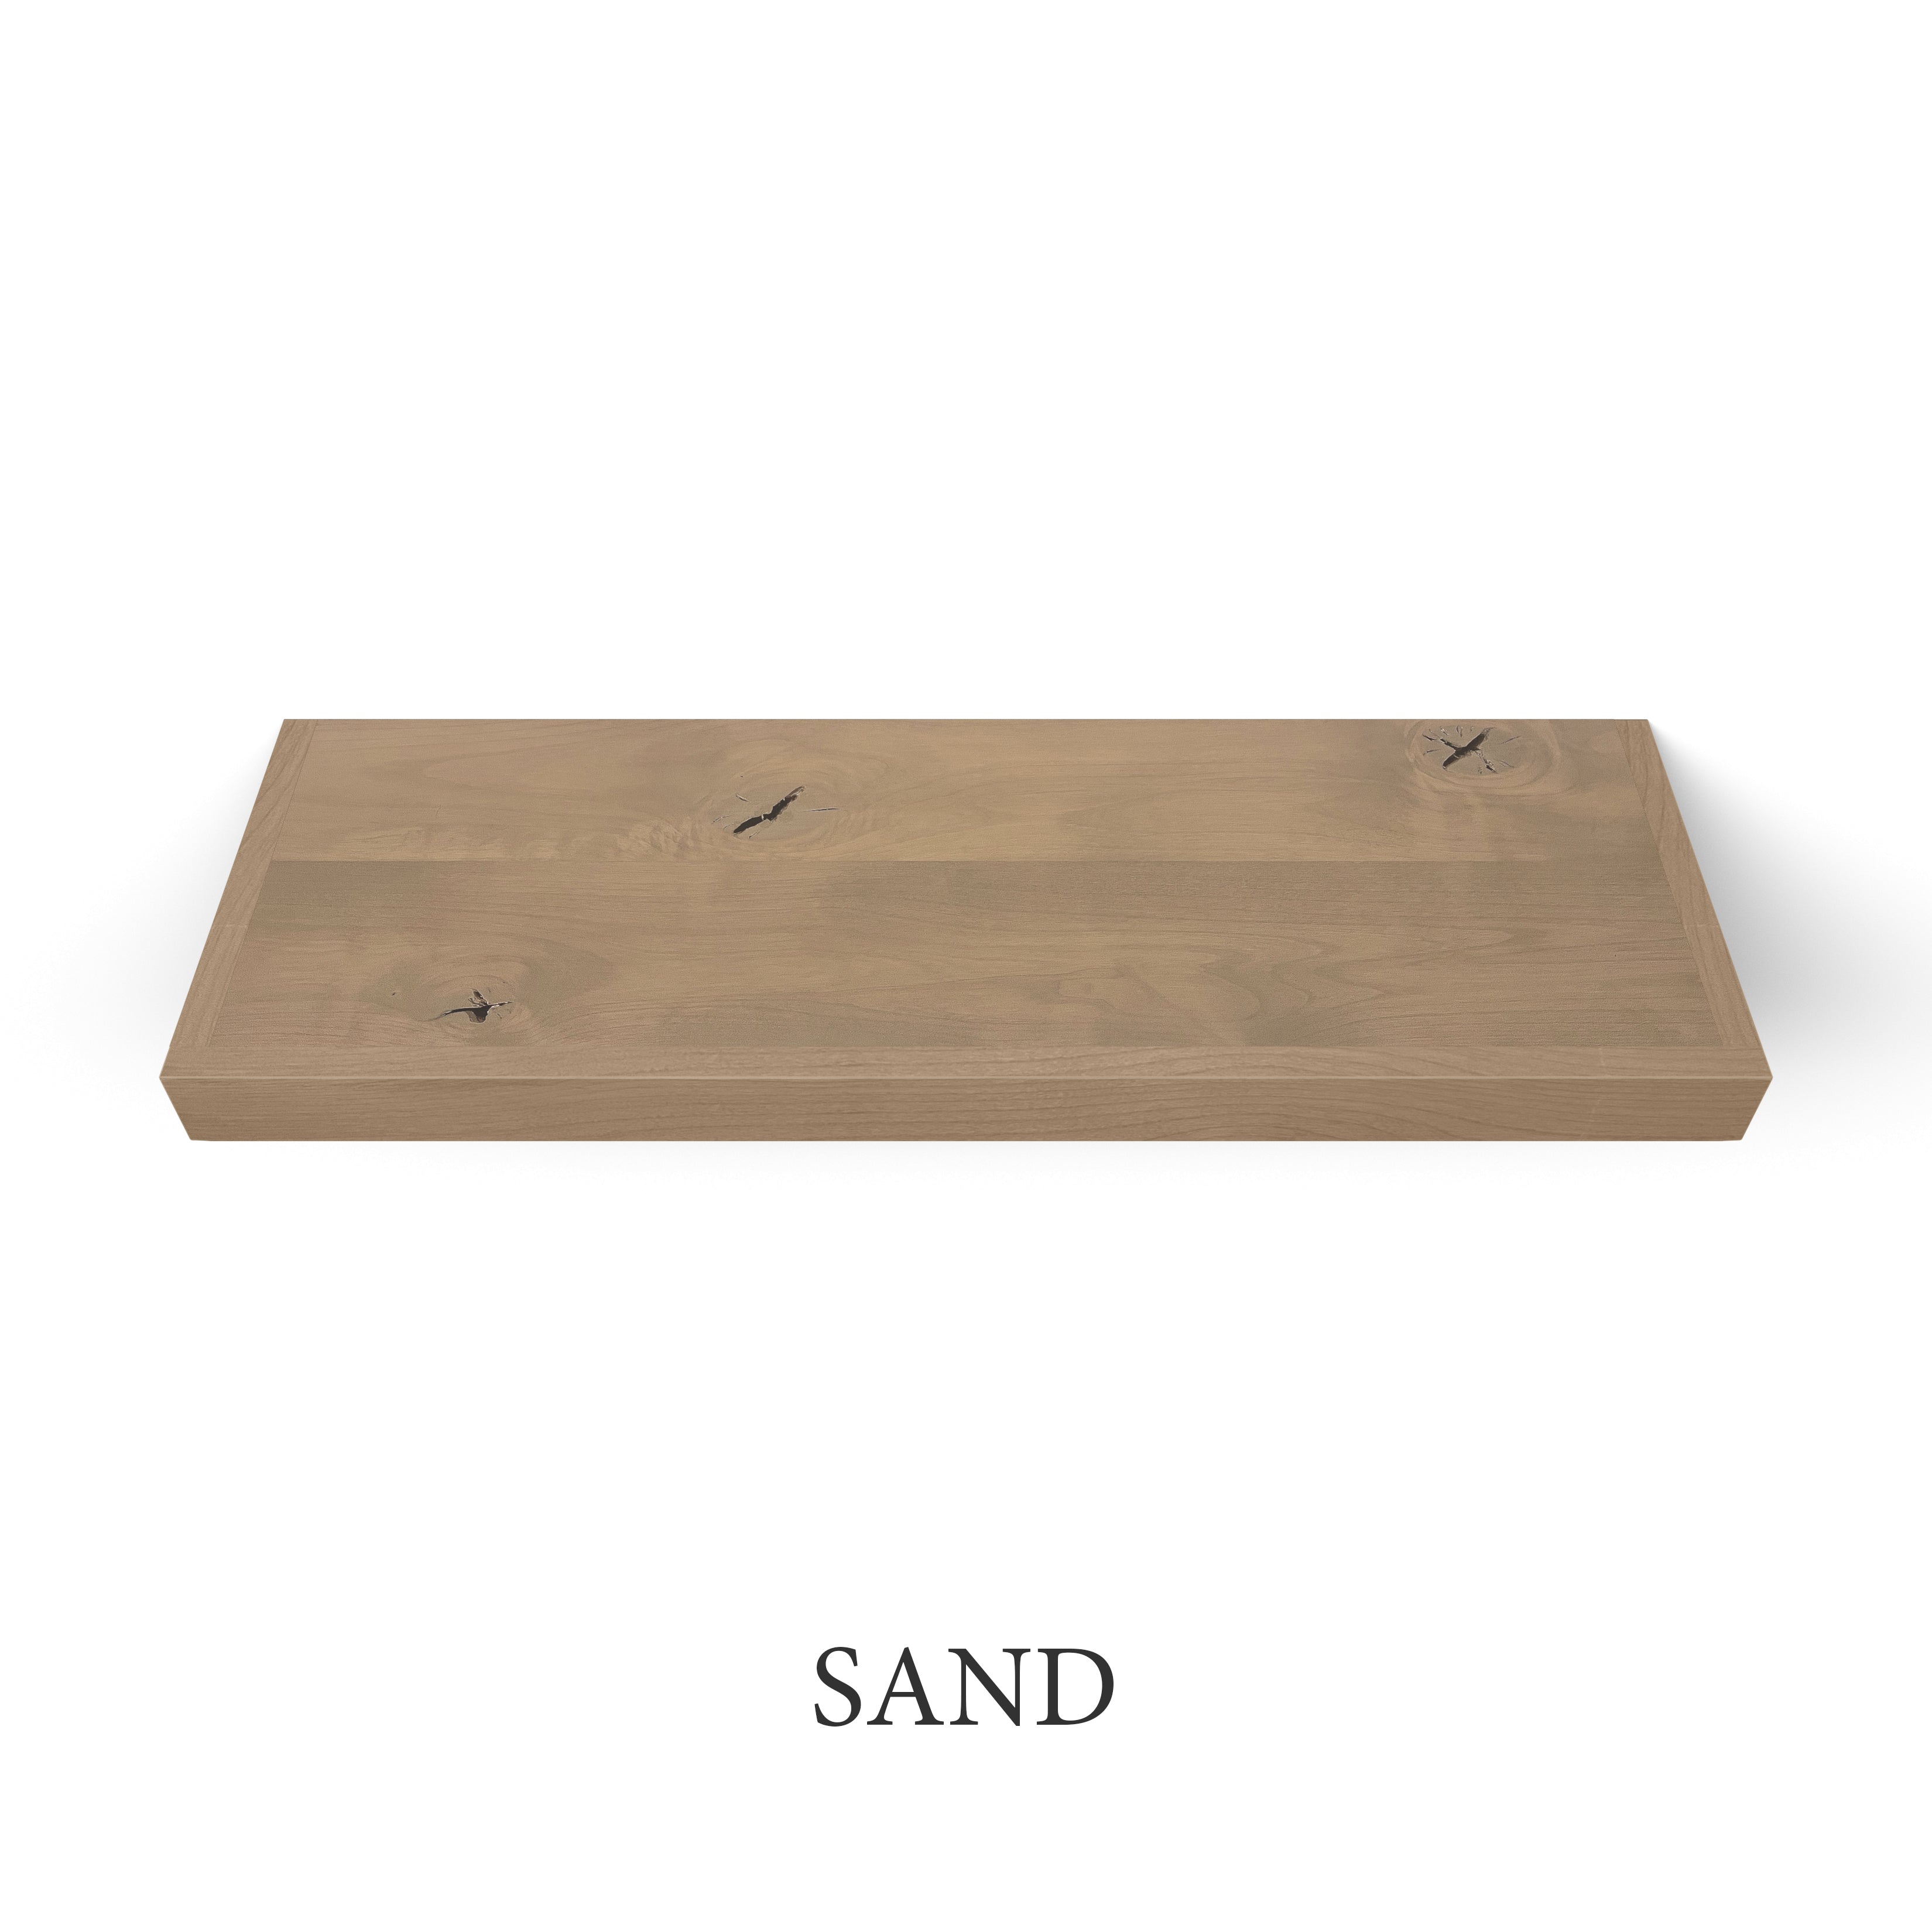 sand Rustic Alder 2 Inch Thick Floating Shelves